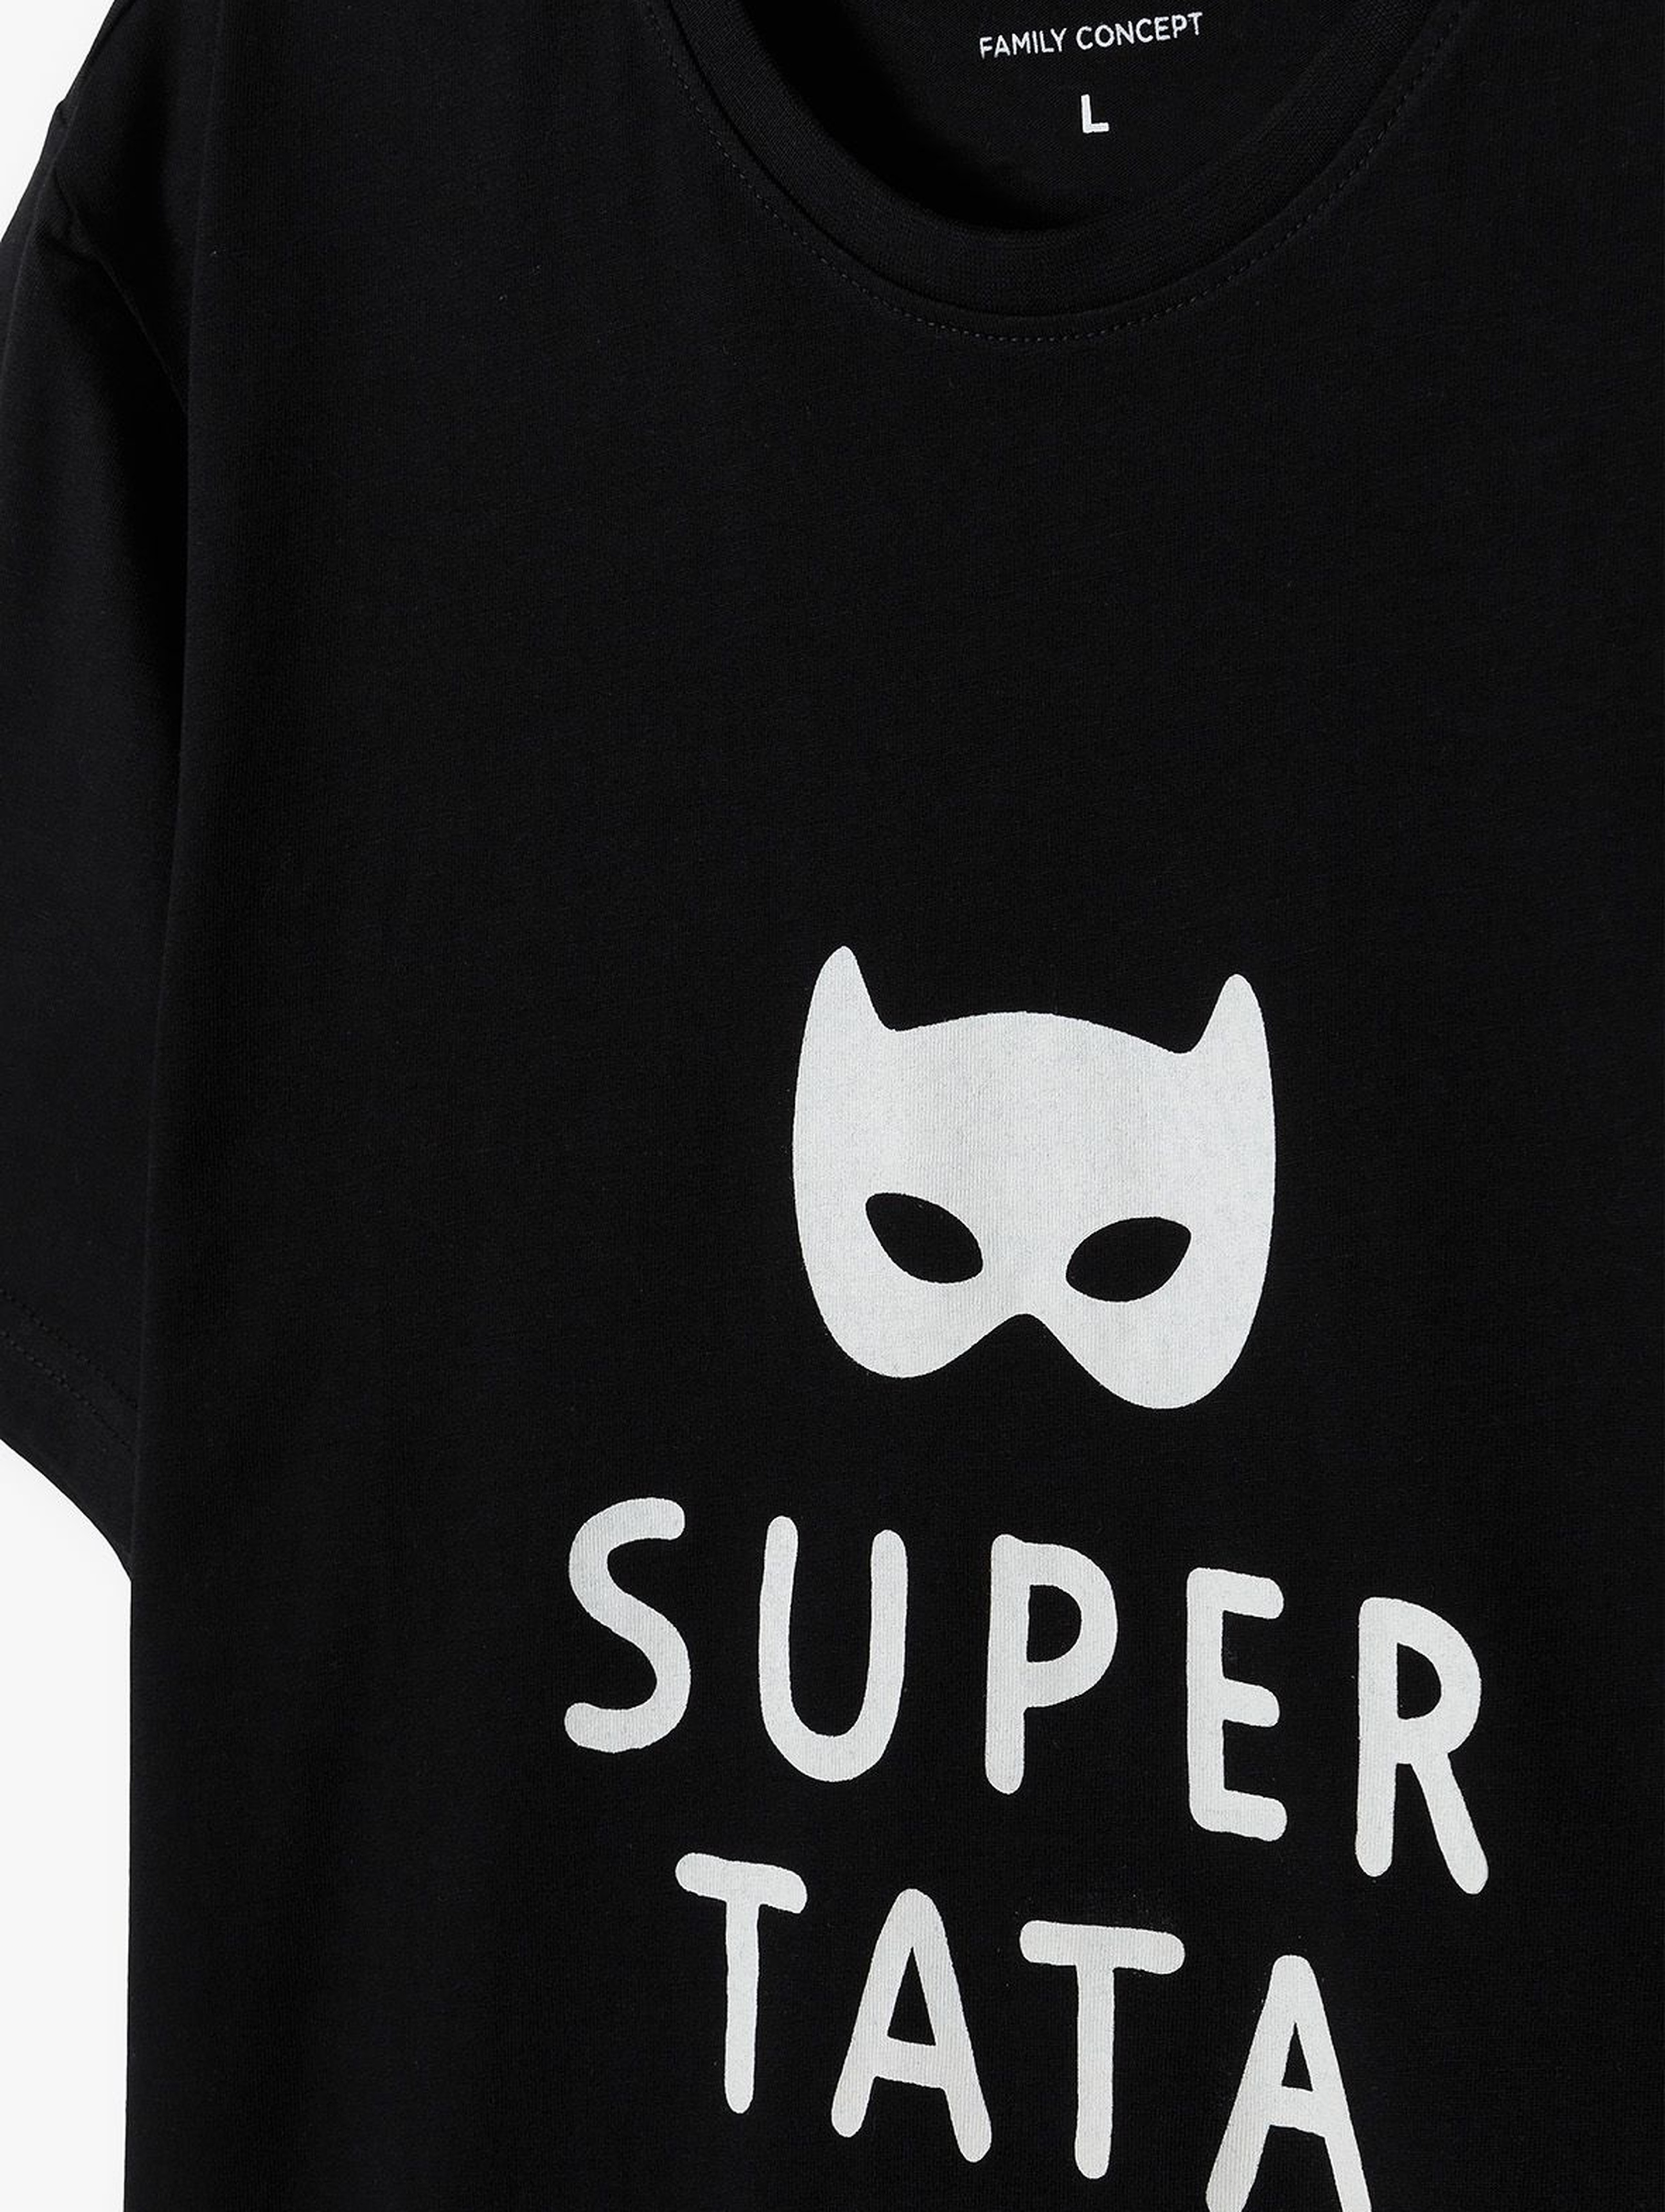 Bawełniany t-shirt męski z nadrukiem "Super tata"